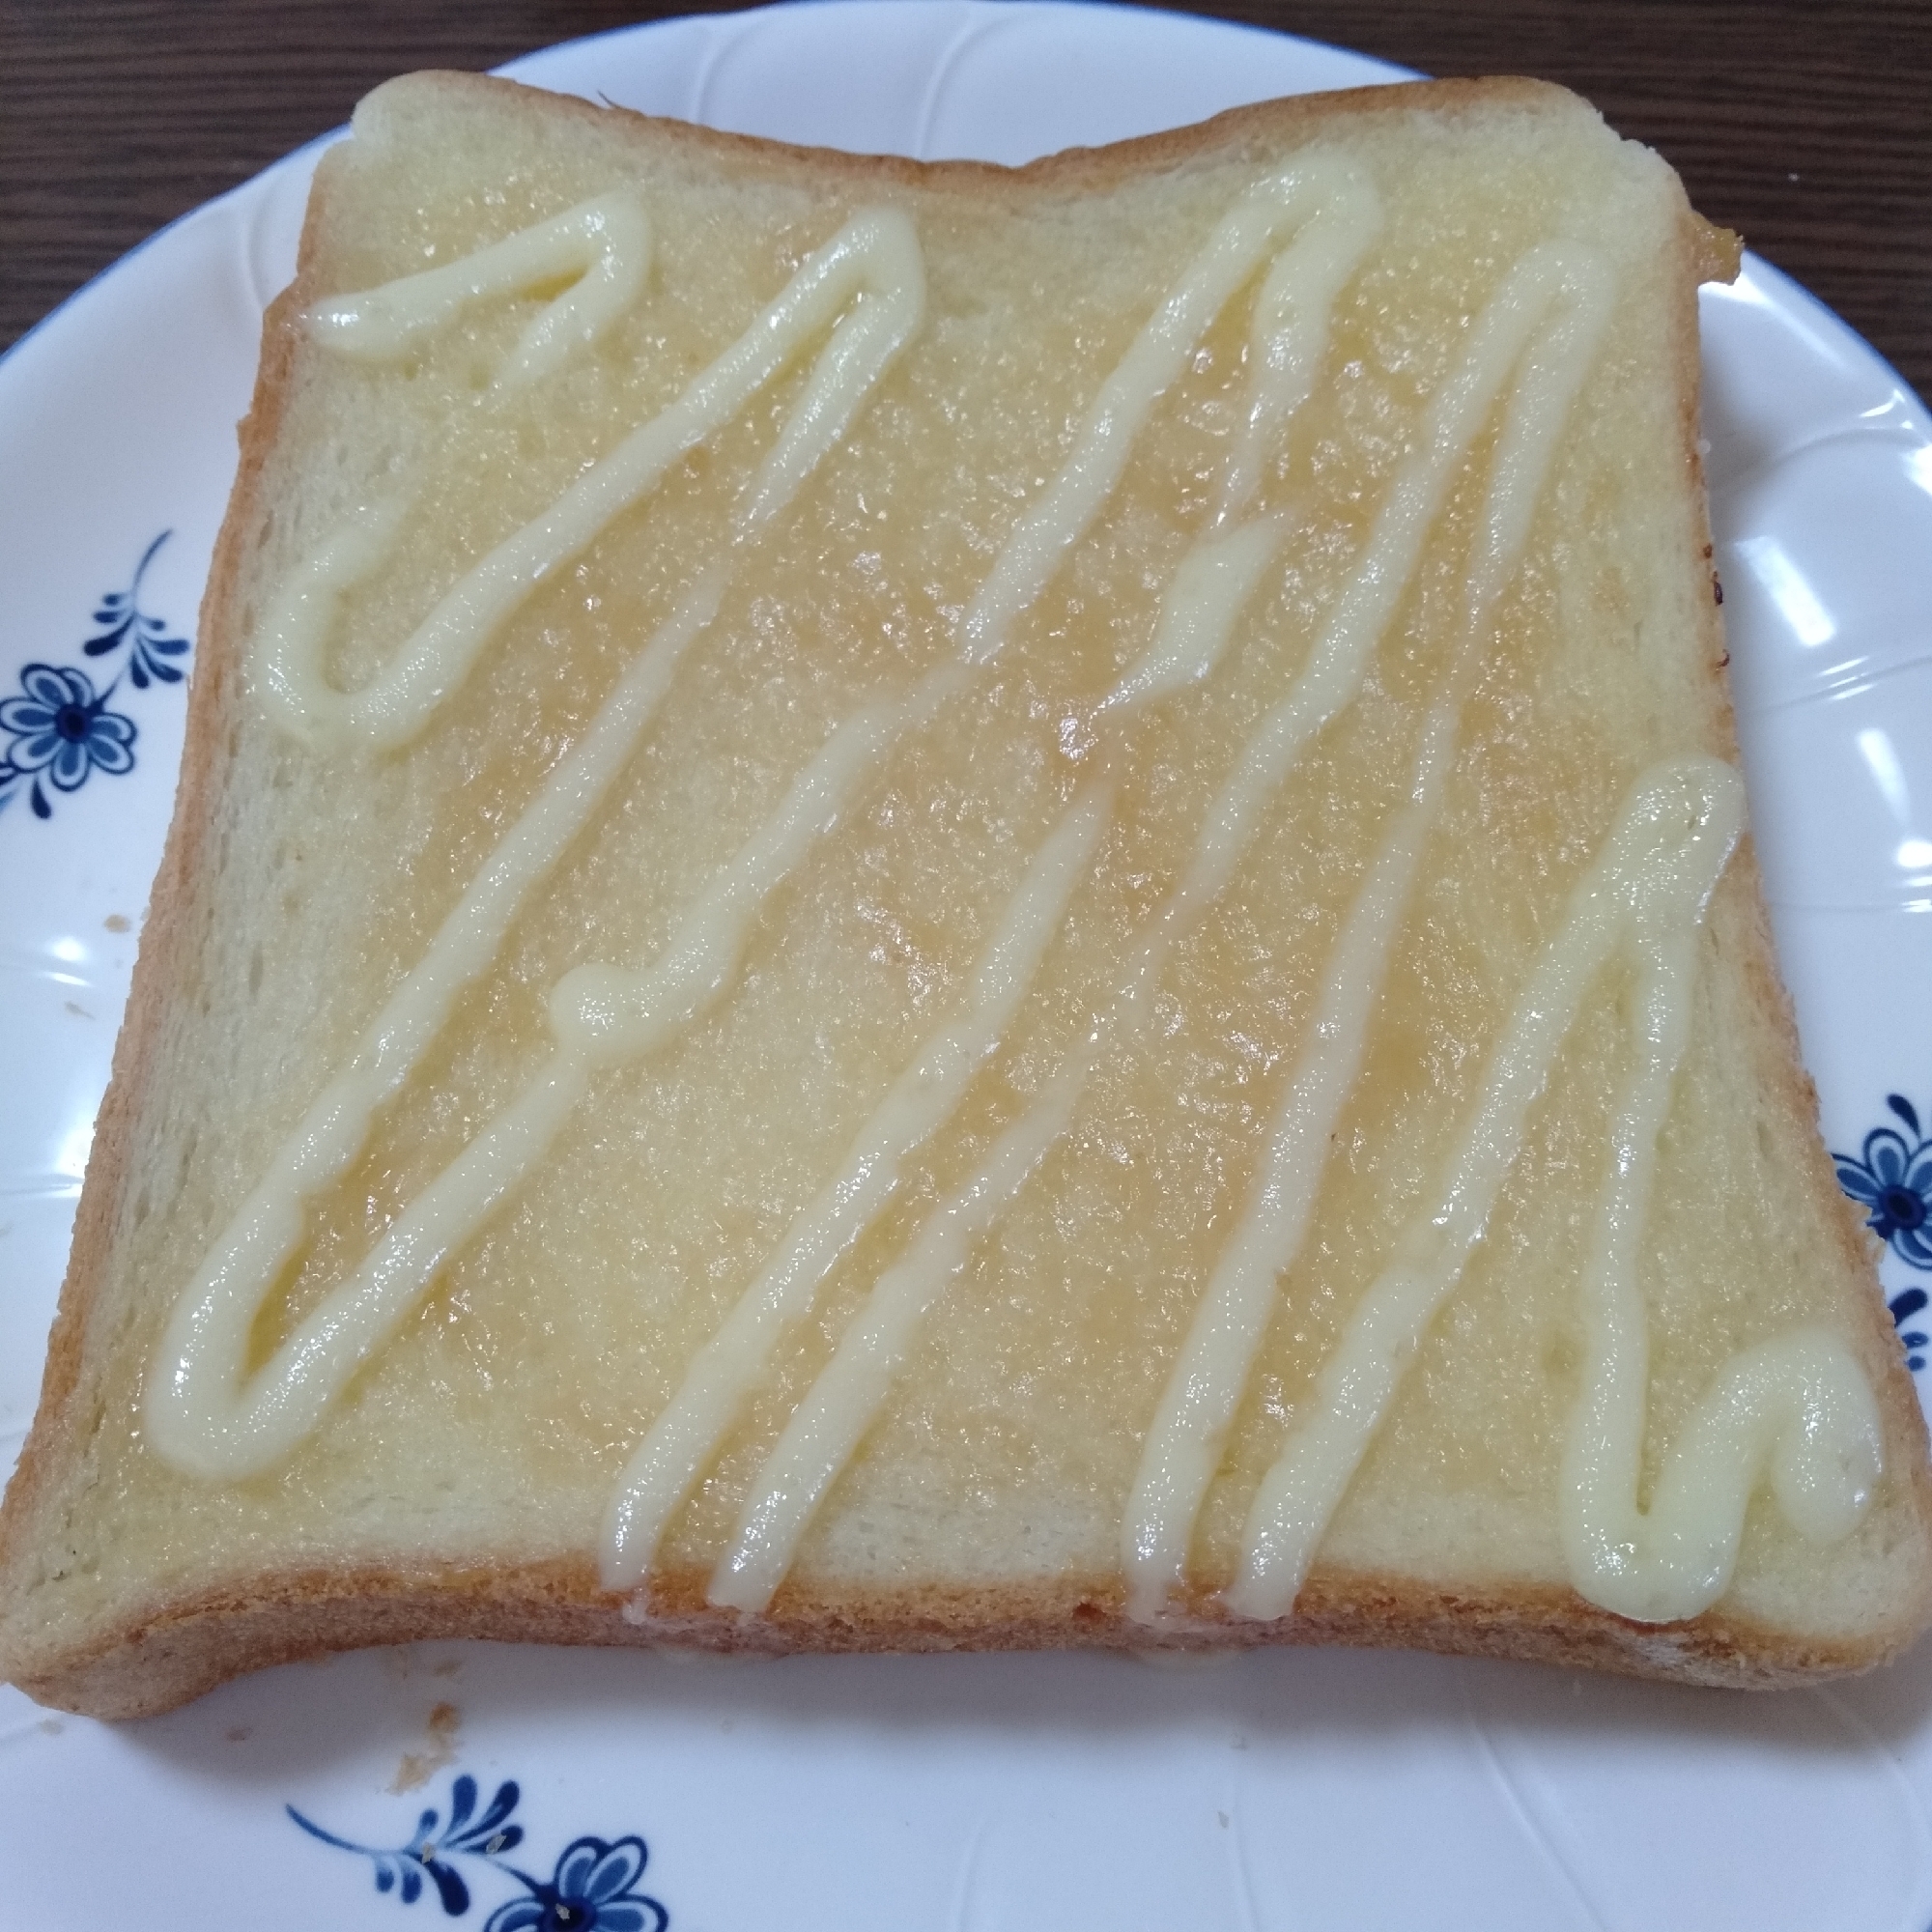 豆腐味噌トースト 食パンアレンジ レシピ 作り方 By ズボラレシピのかねつぐ 楽天レシピ